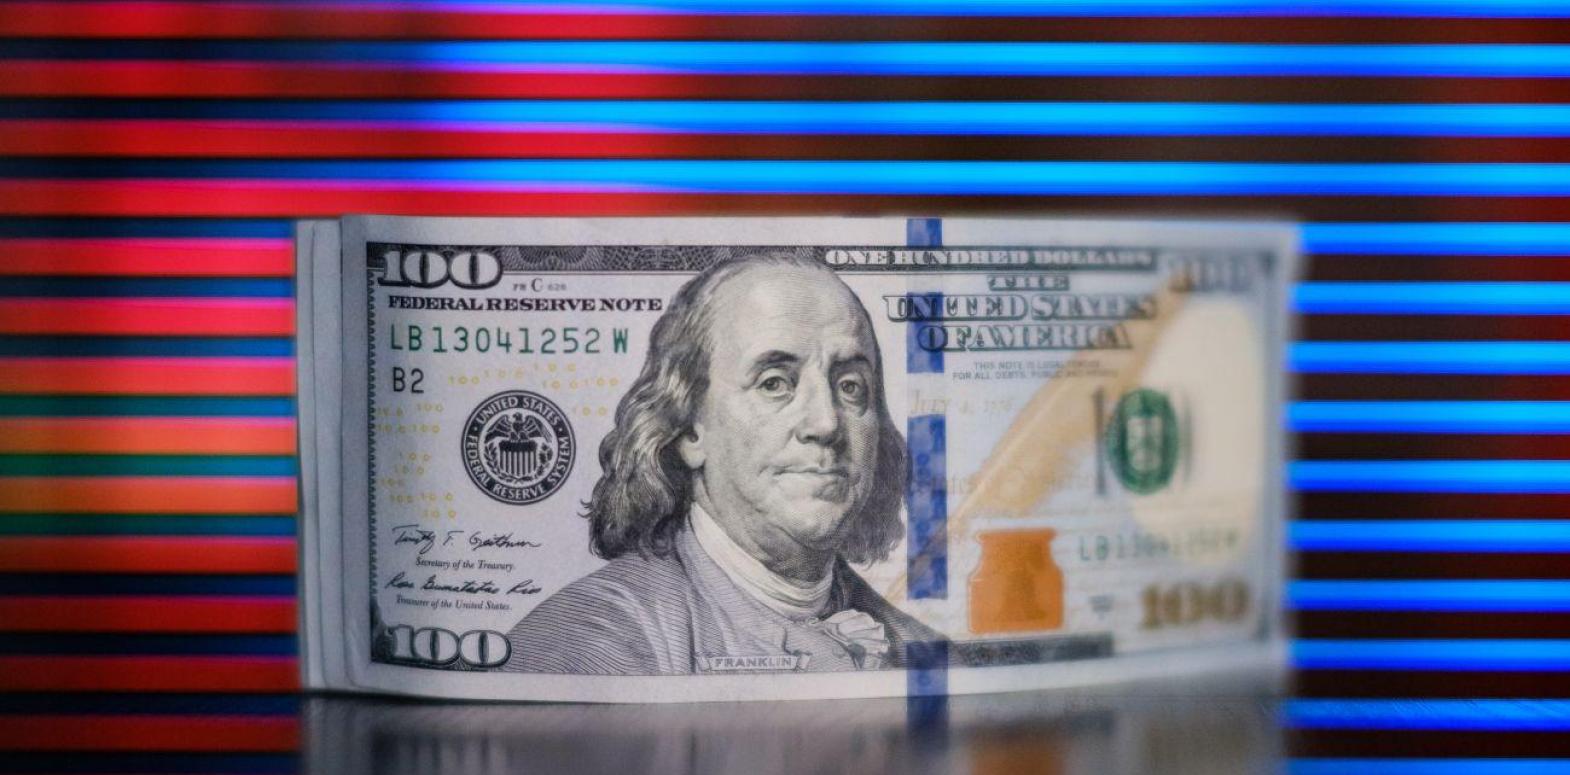 НБУ повысил официальный курс доллара до очередного максимума